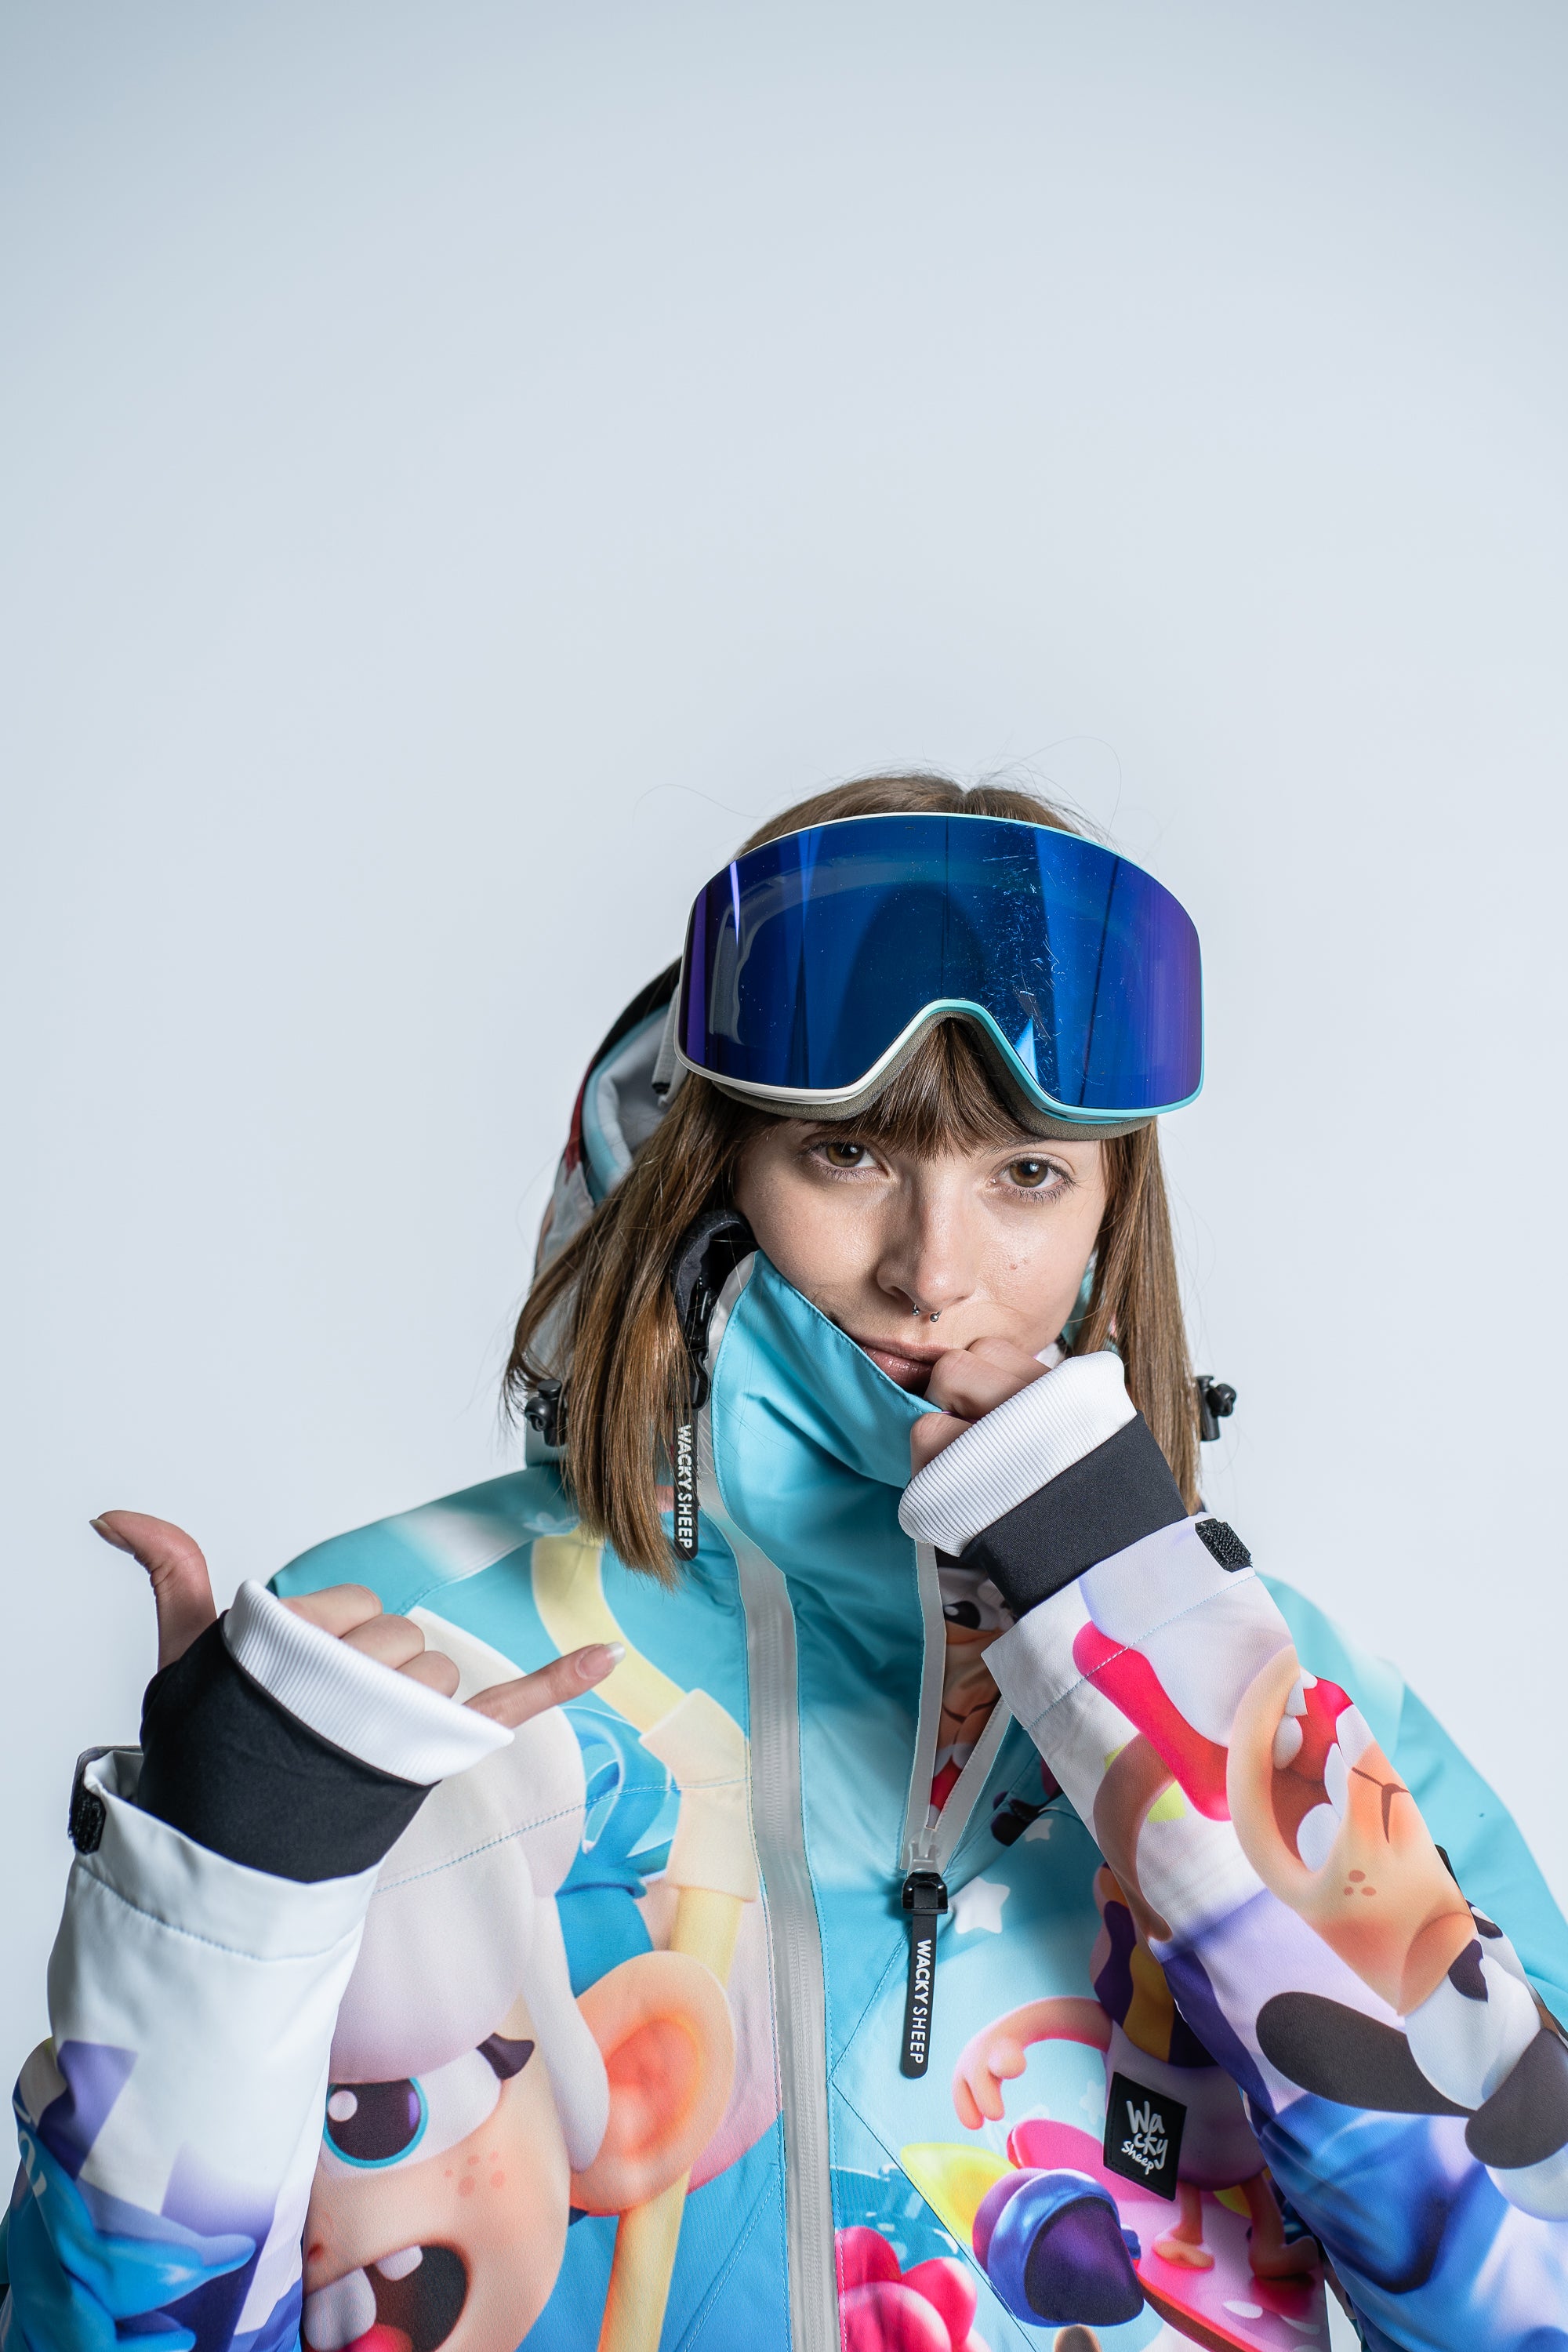 W's Pastirica 3D Ski Jacket